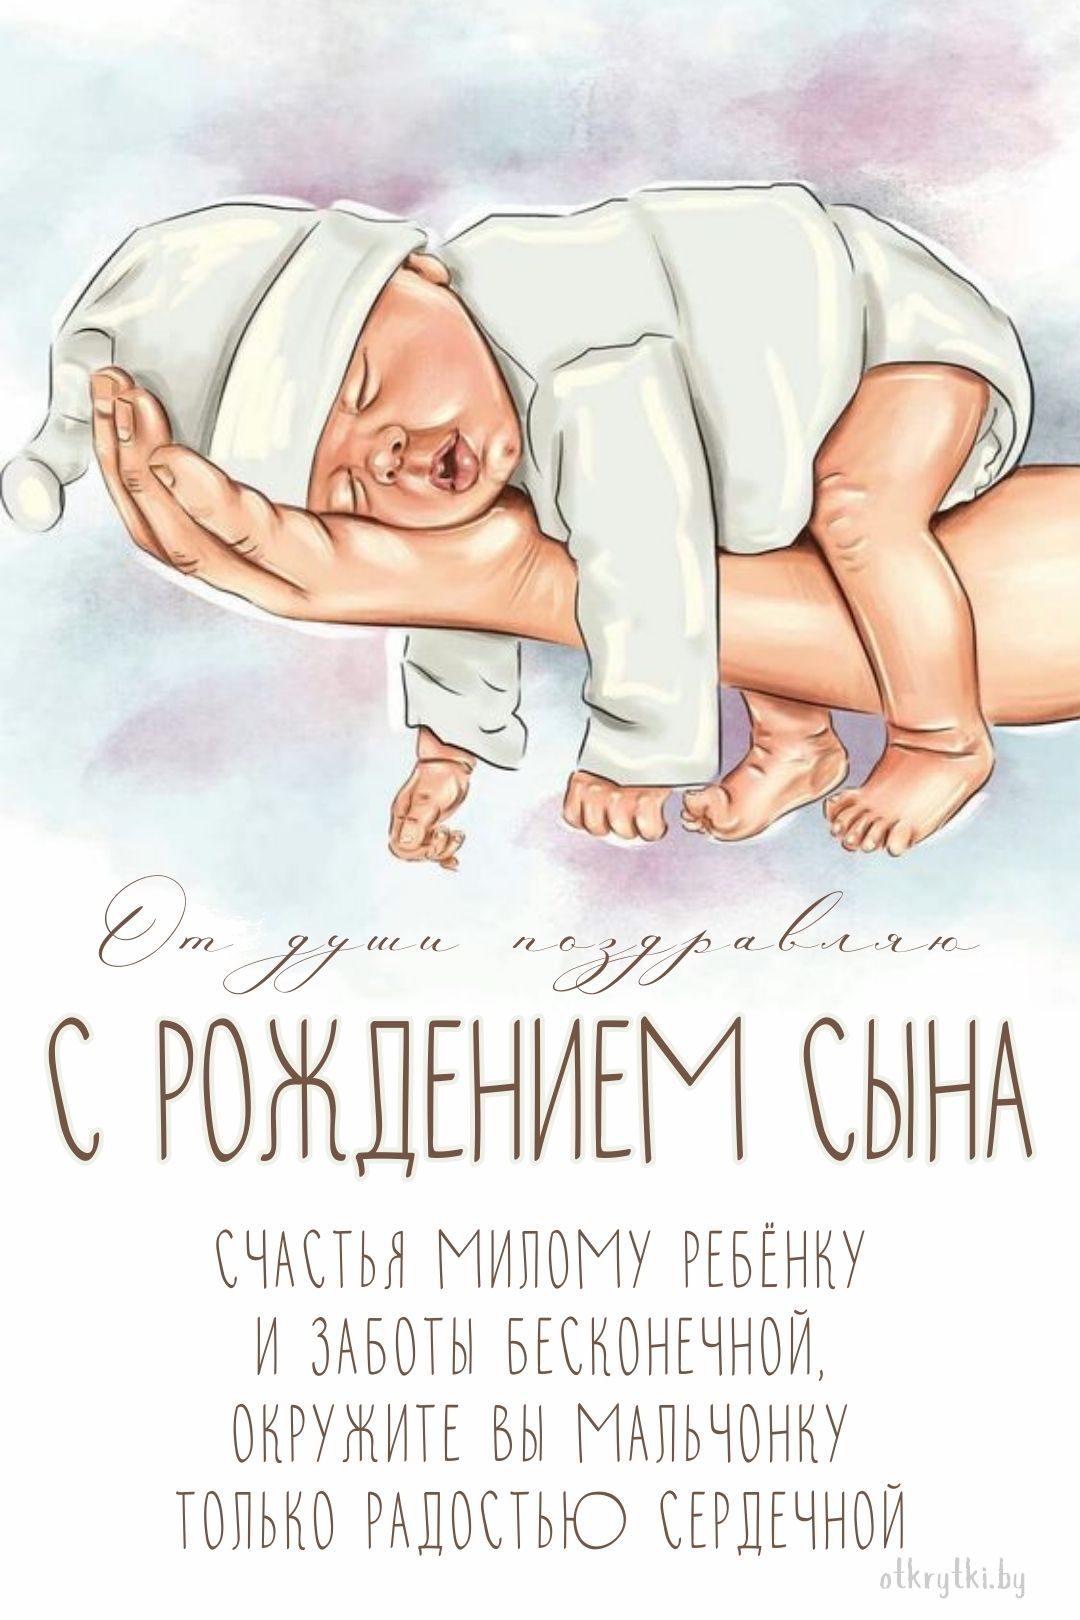 Прекрасная открытка с поздравлением с рождением сына